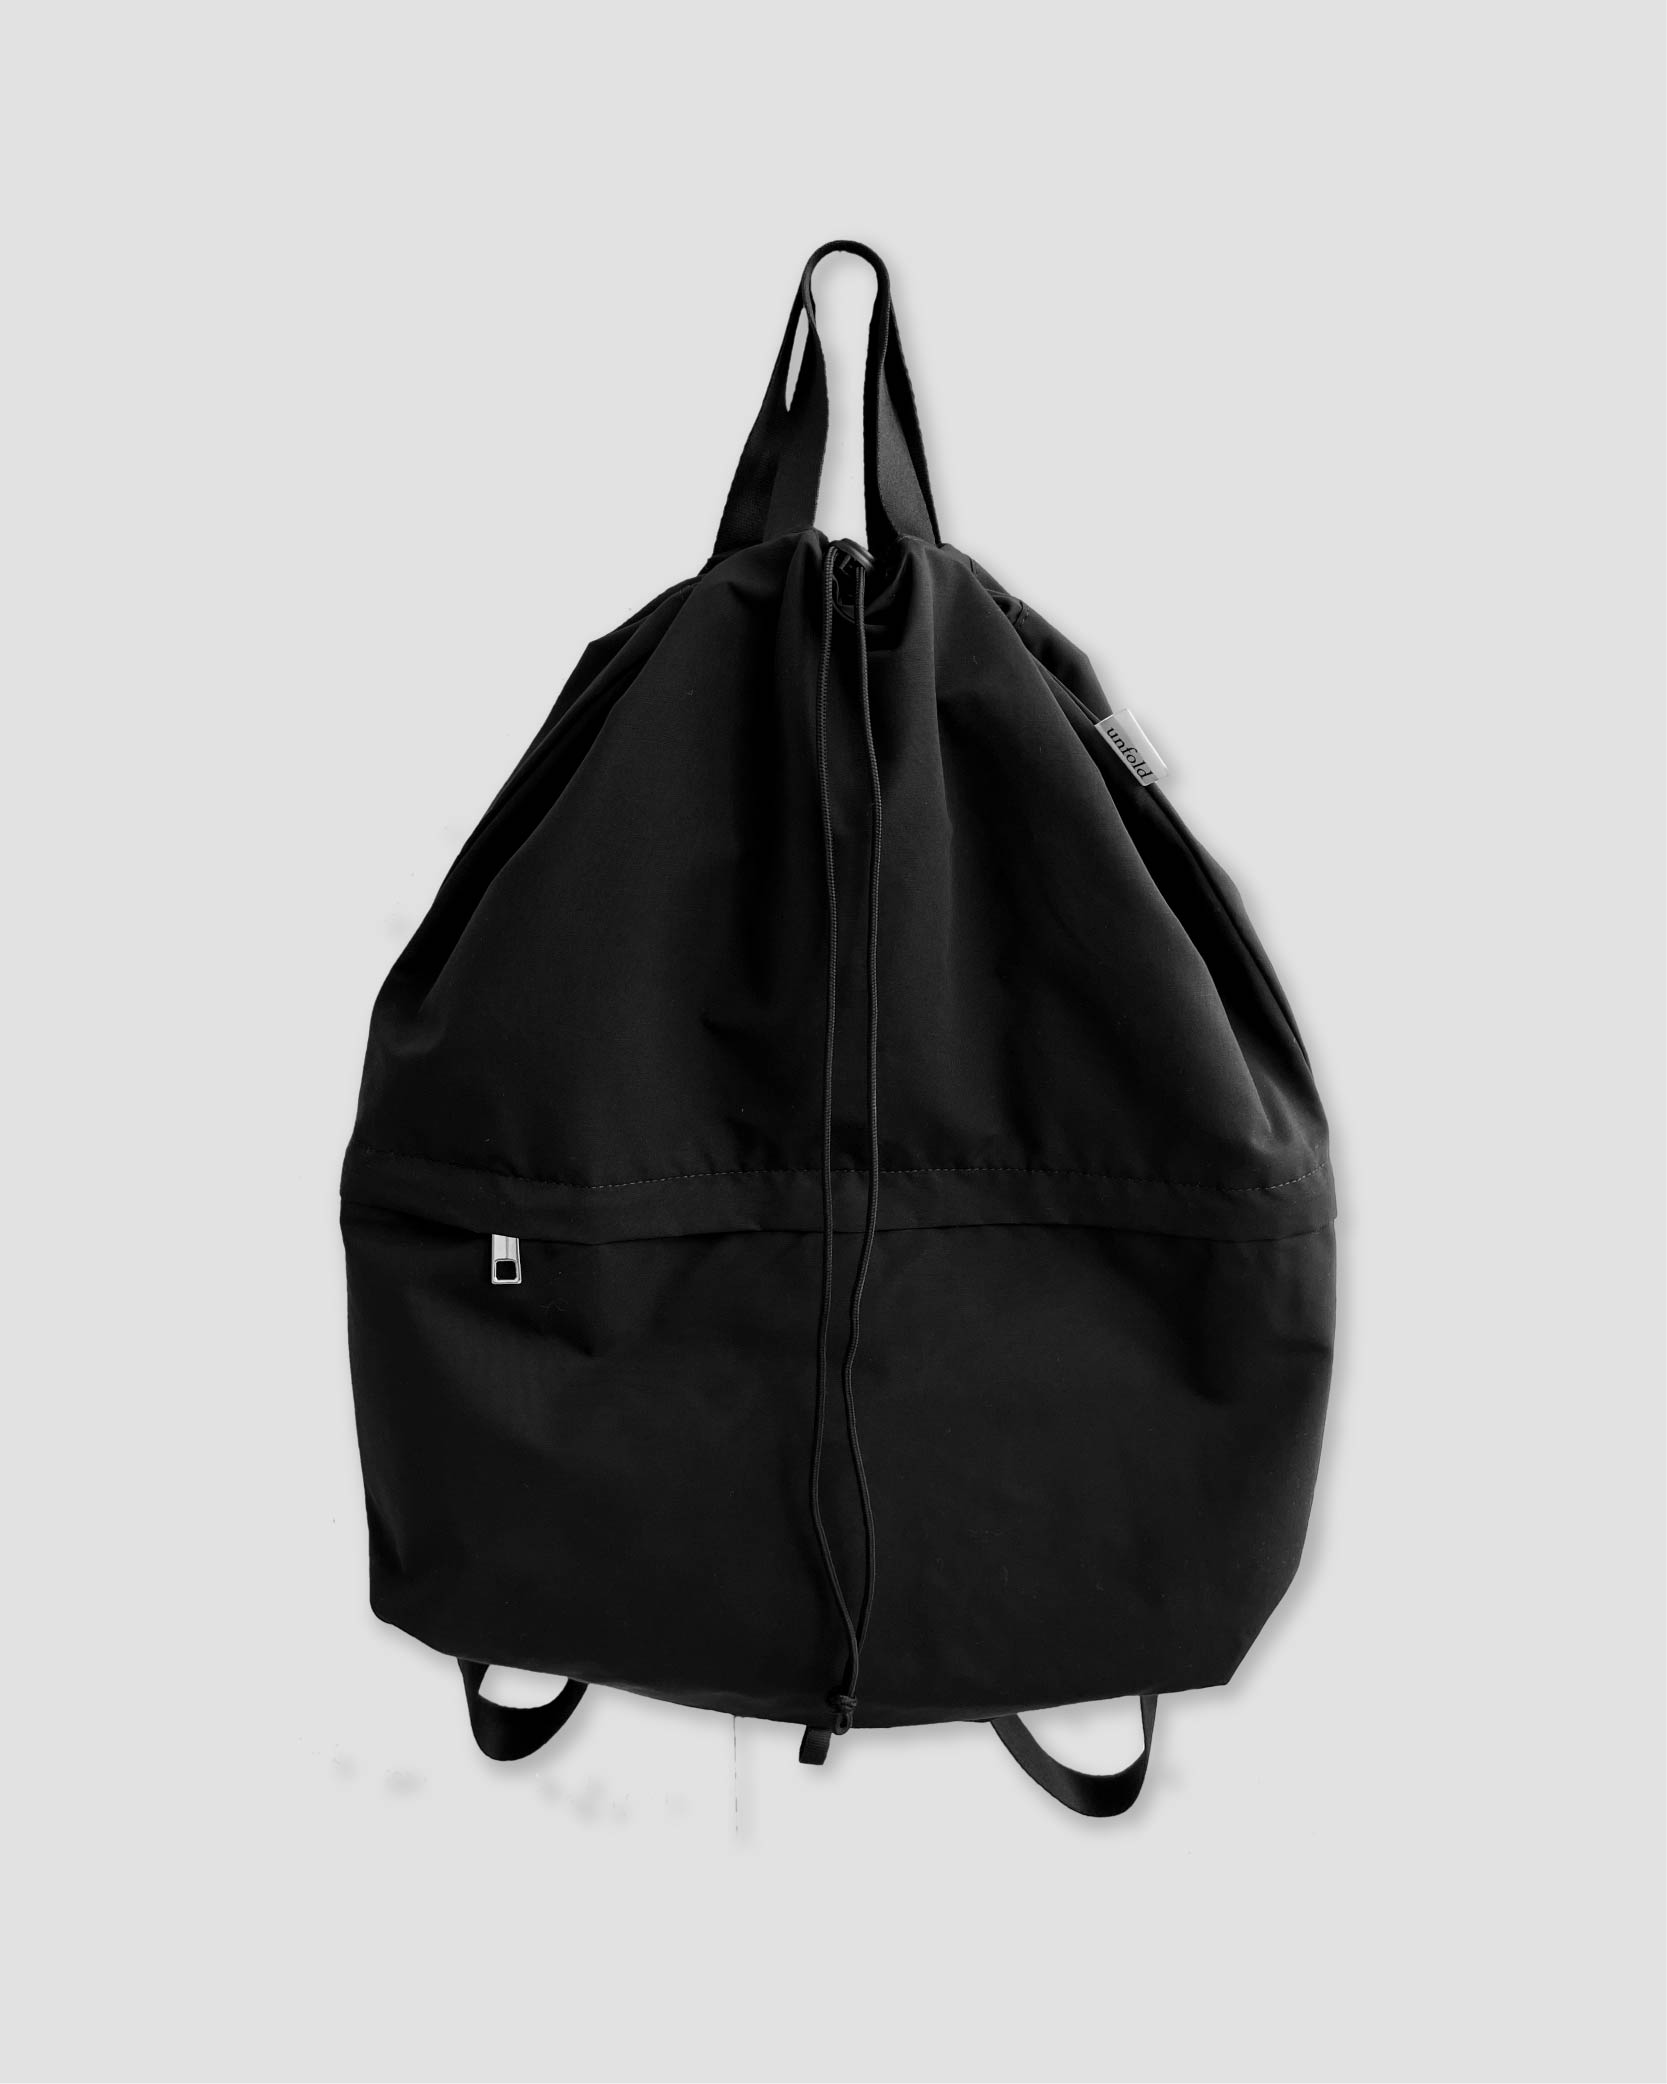 언폴드,unfold,에코백,파우치,천가방,친환경가방,[4/3 예약배송] String backpack (Black)